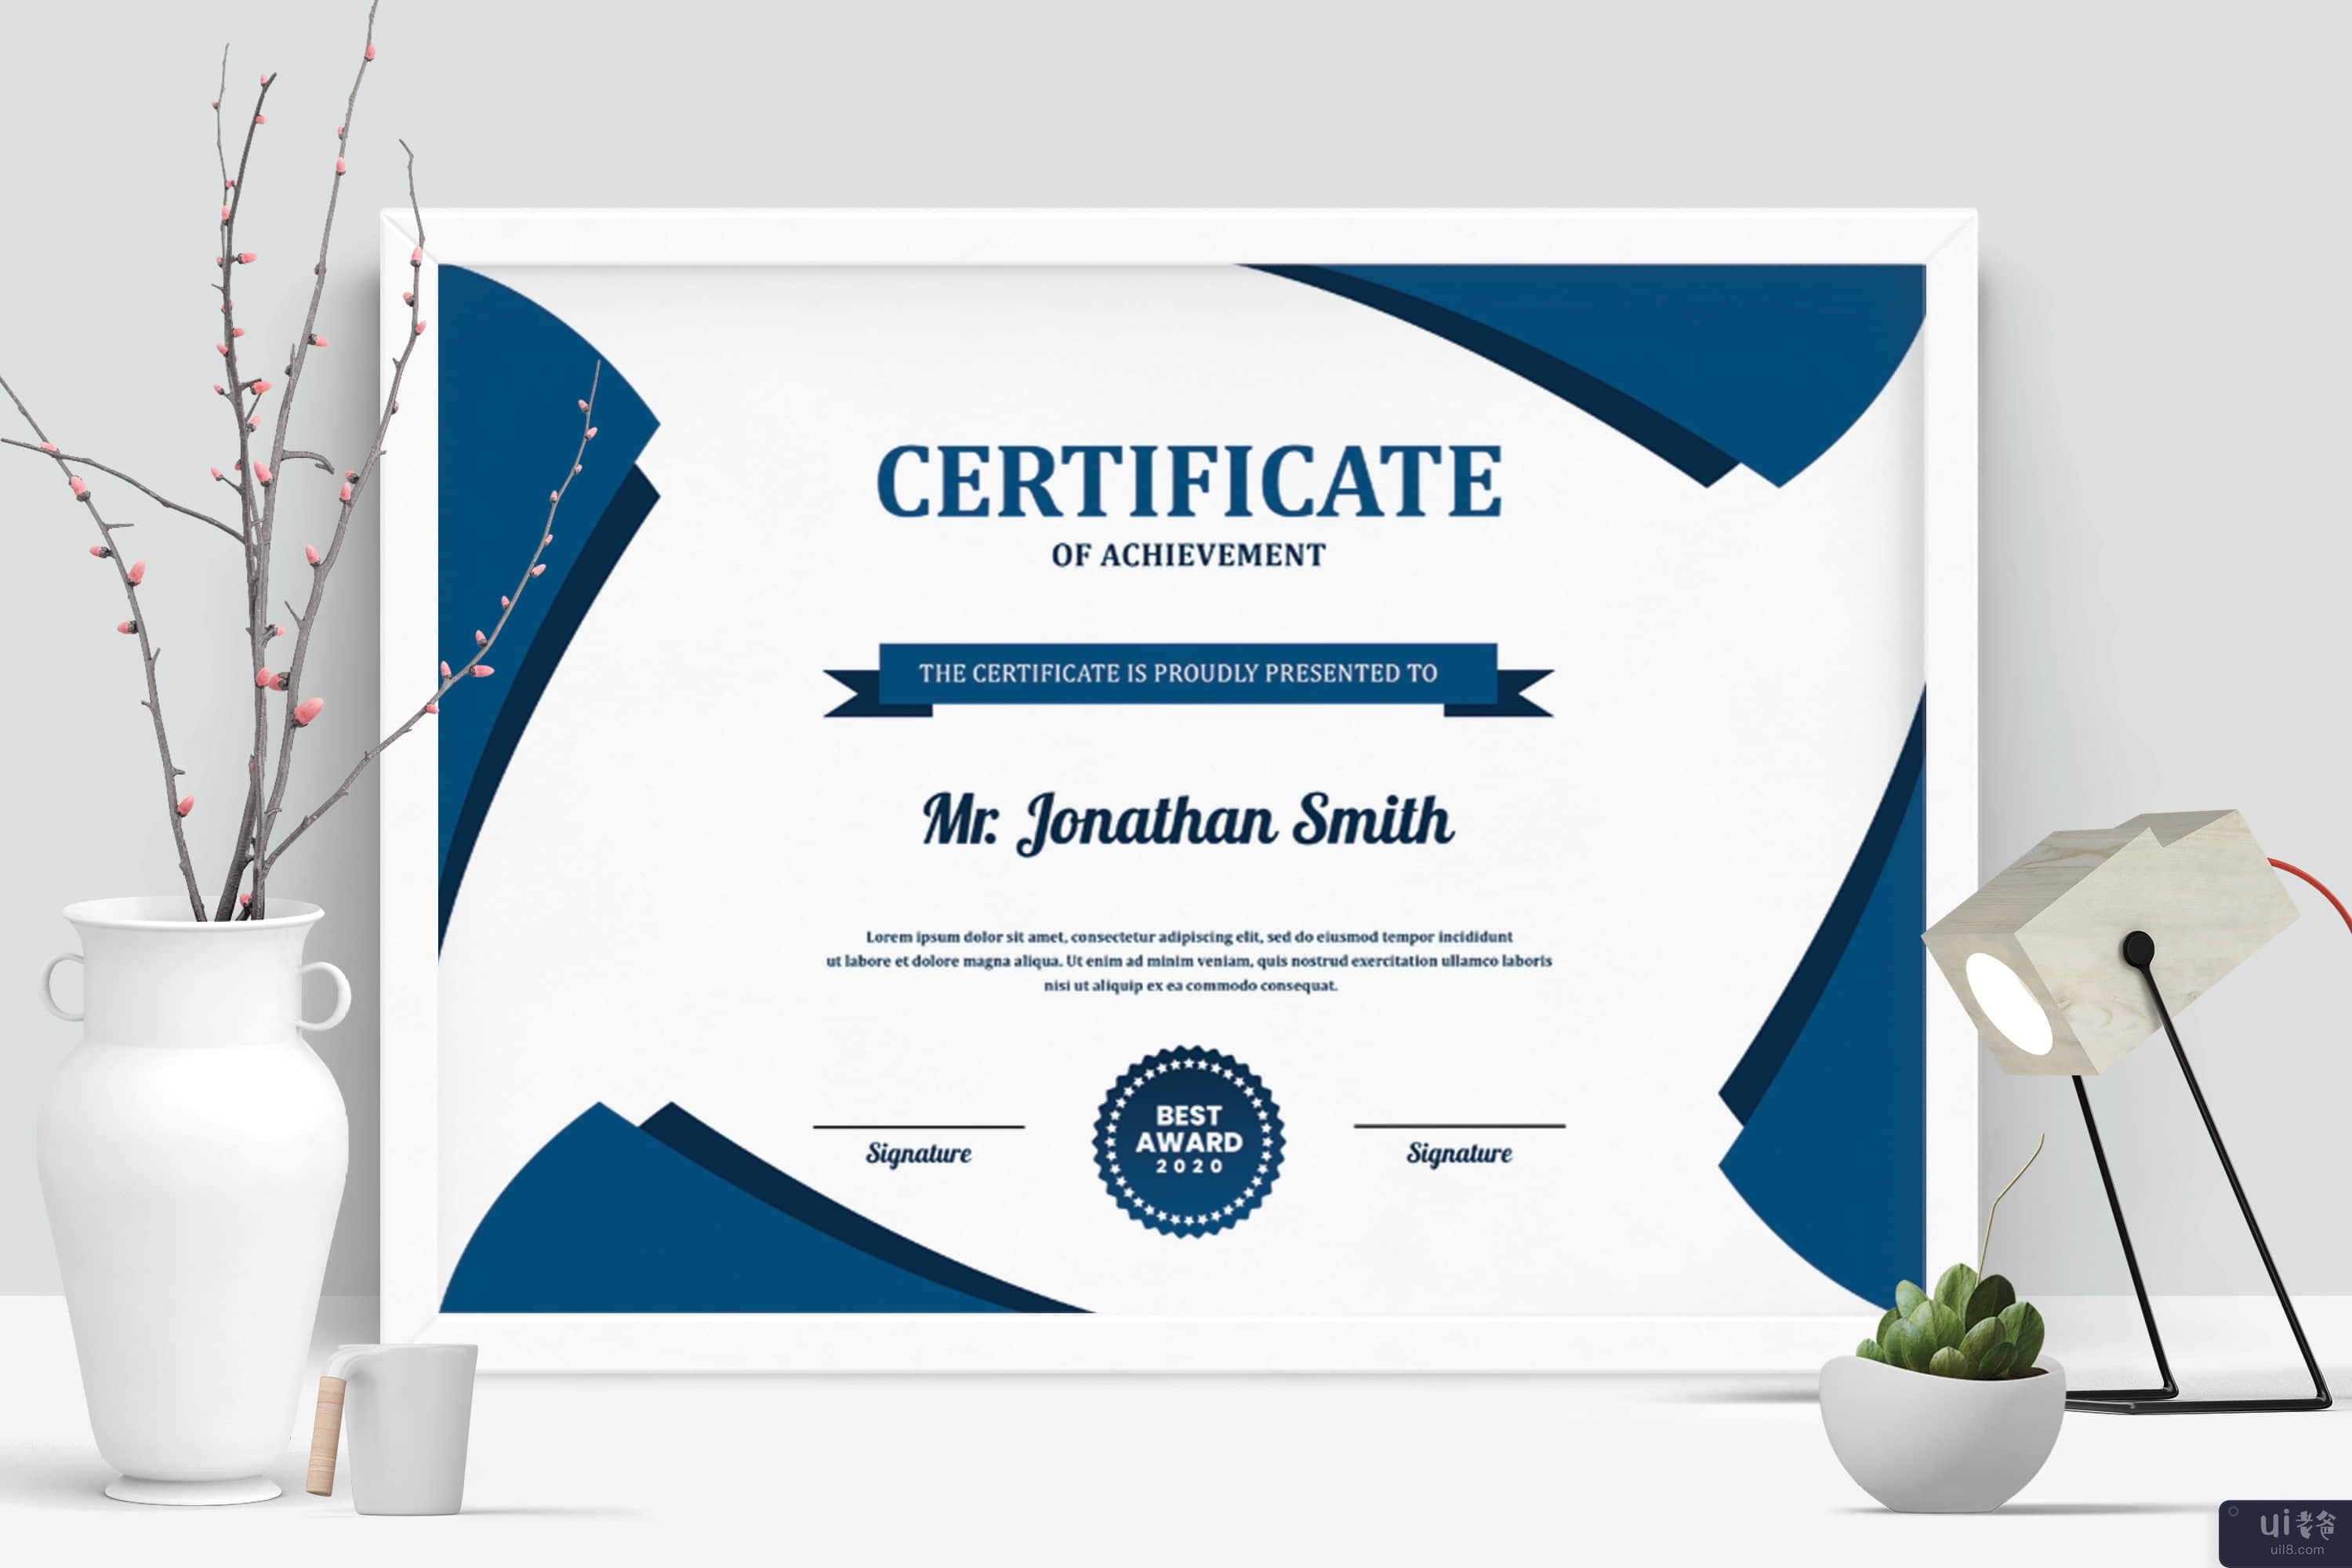 证书(Certificate)插图2